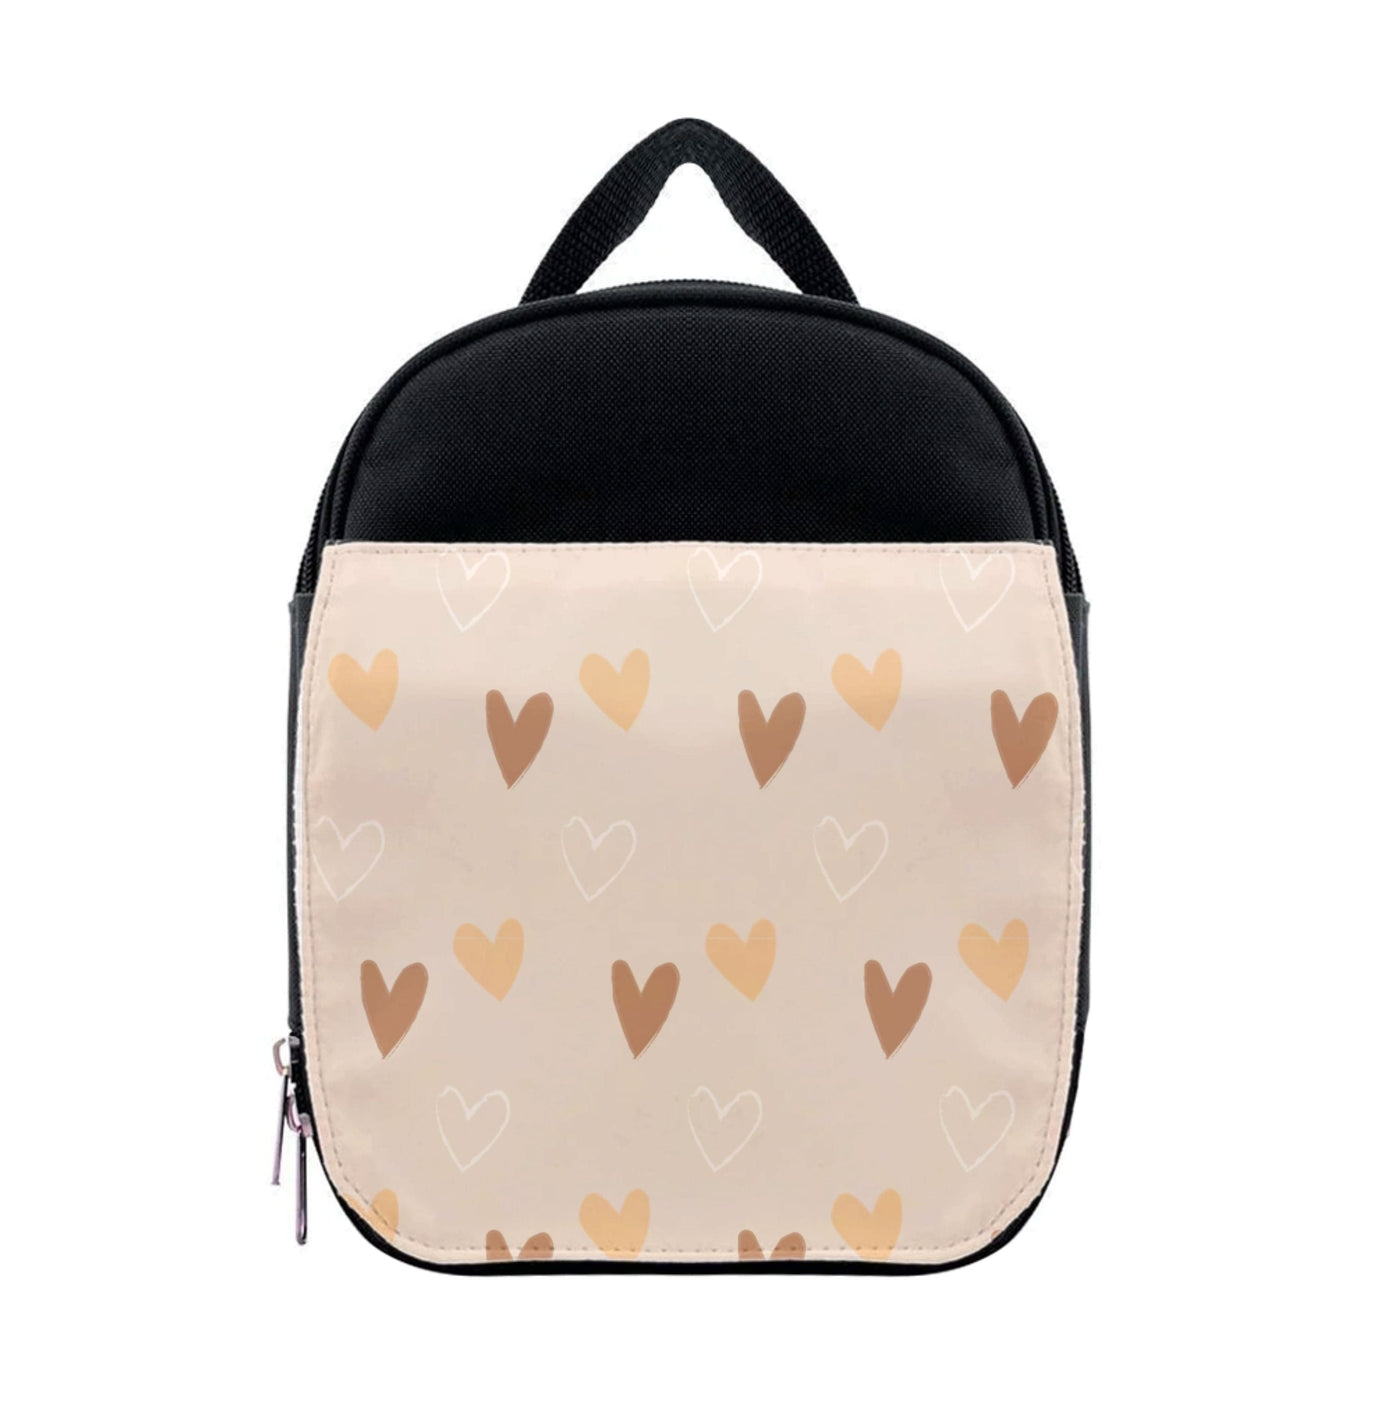 Cute Love Heart Pattern Lunchbox